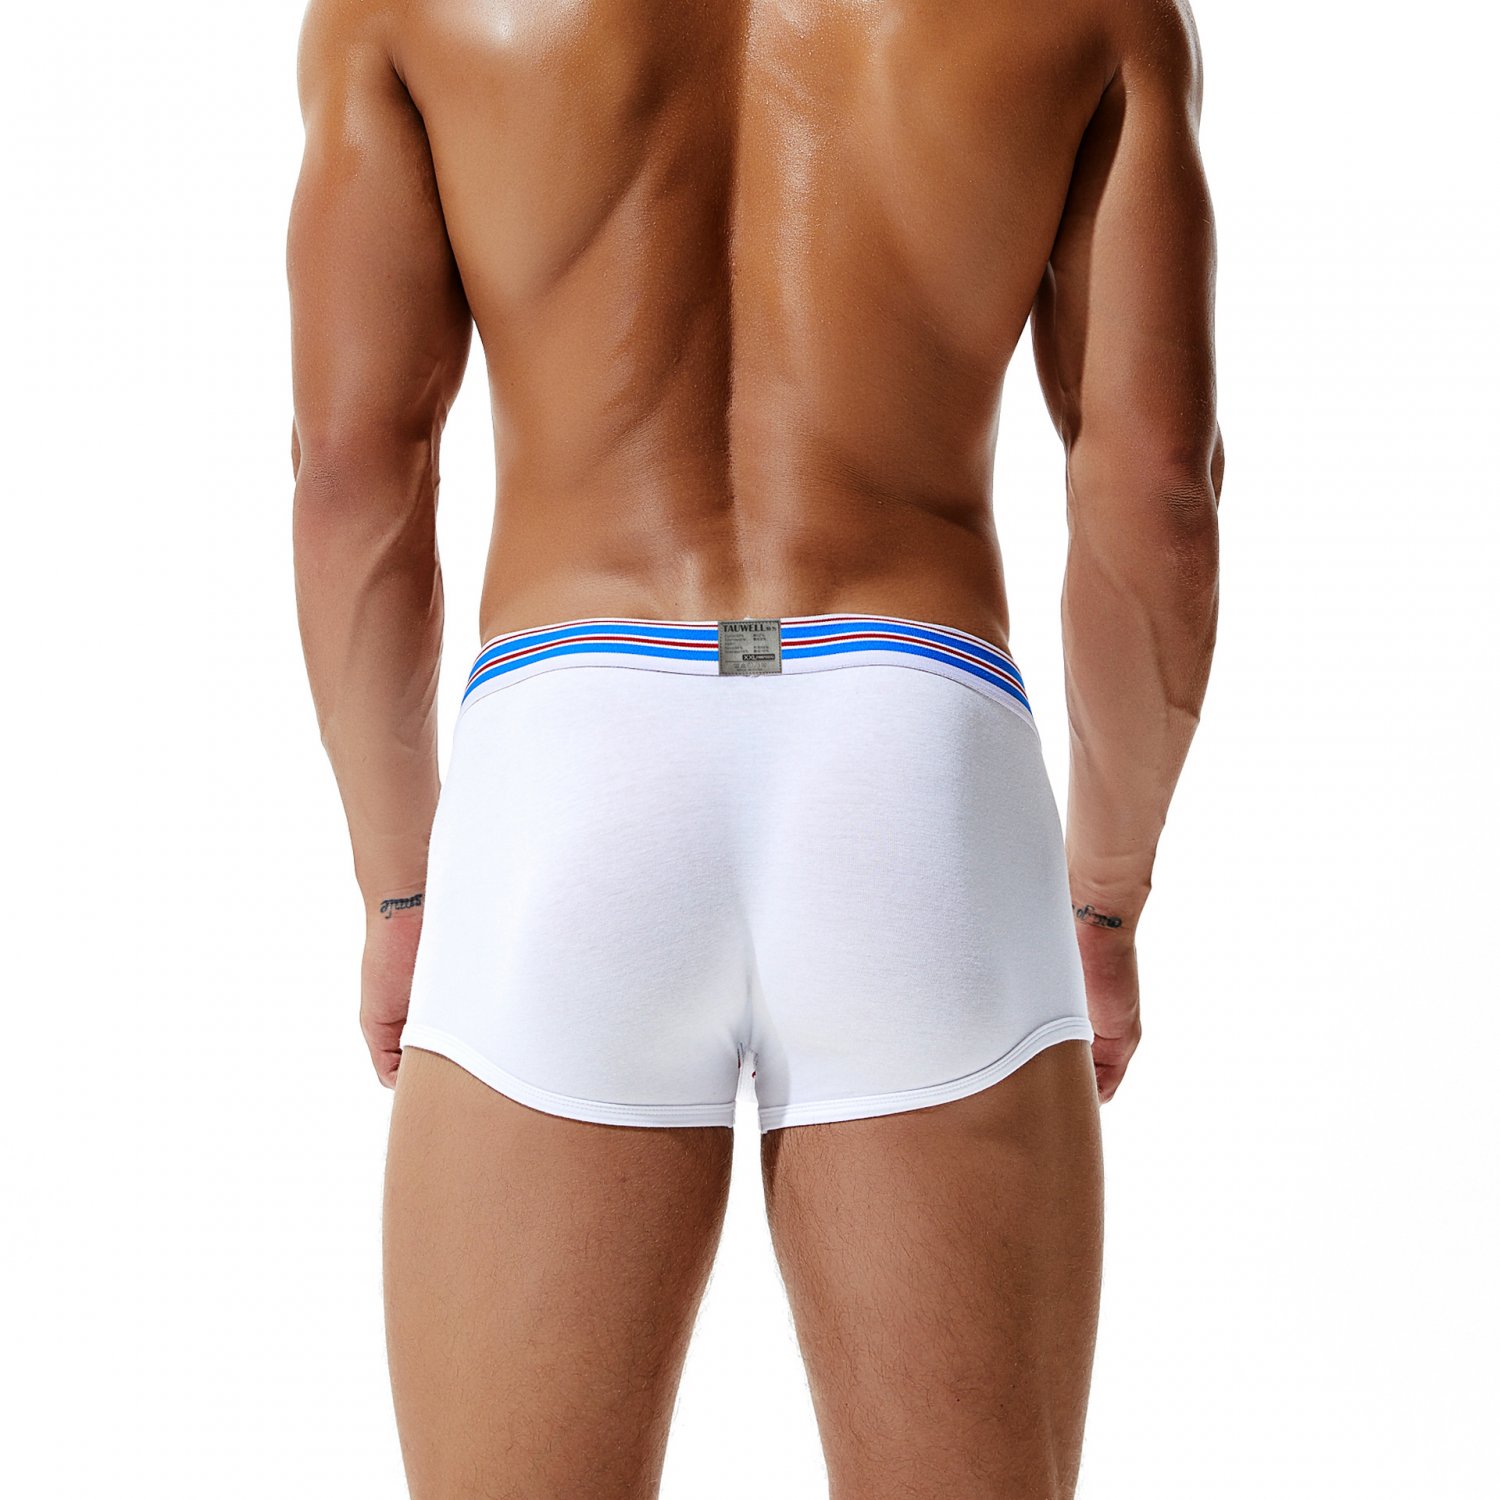 White 3pcs Mens Sexy Underwear Cotton Blend Low Rise Boxer Briefs 8201 5786